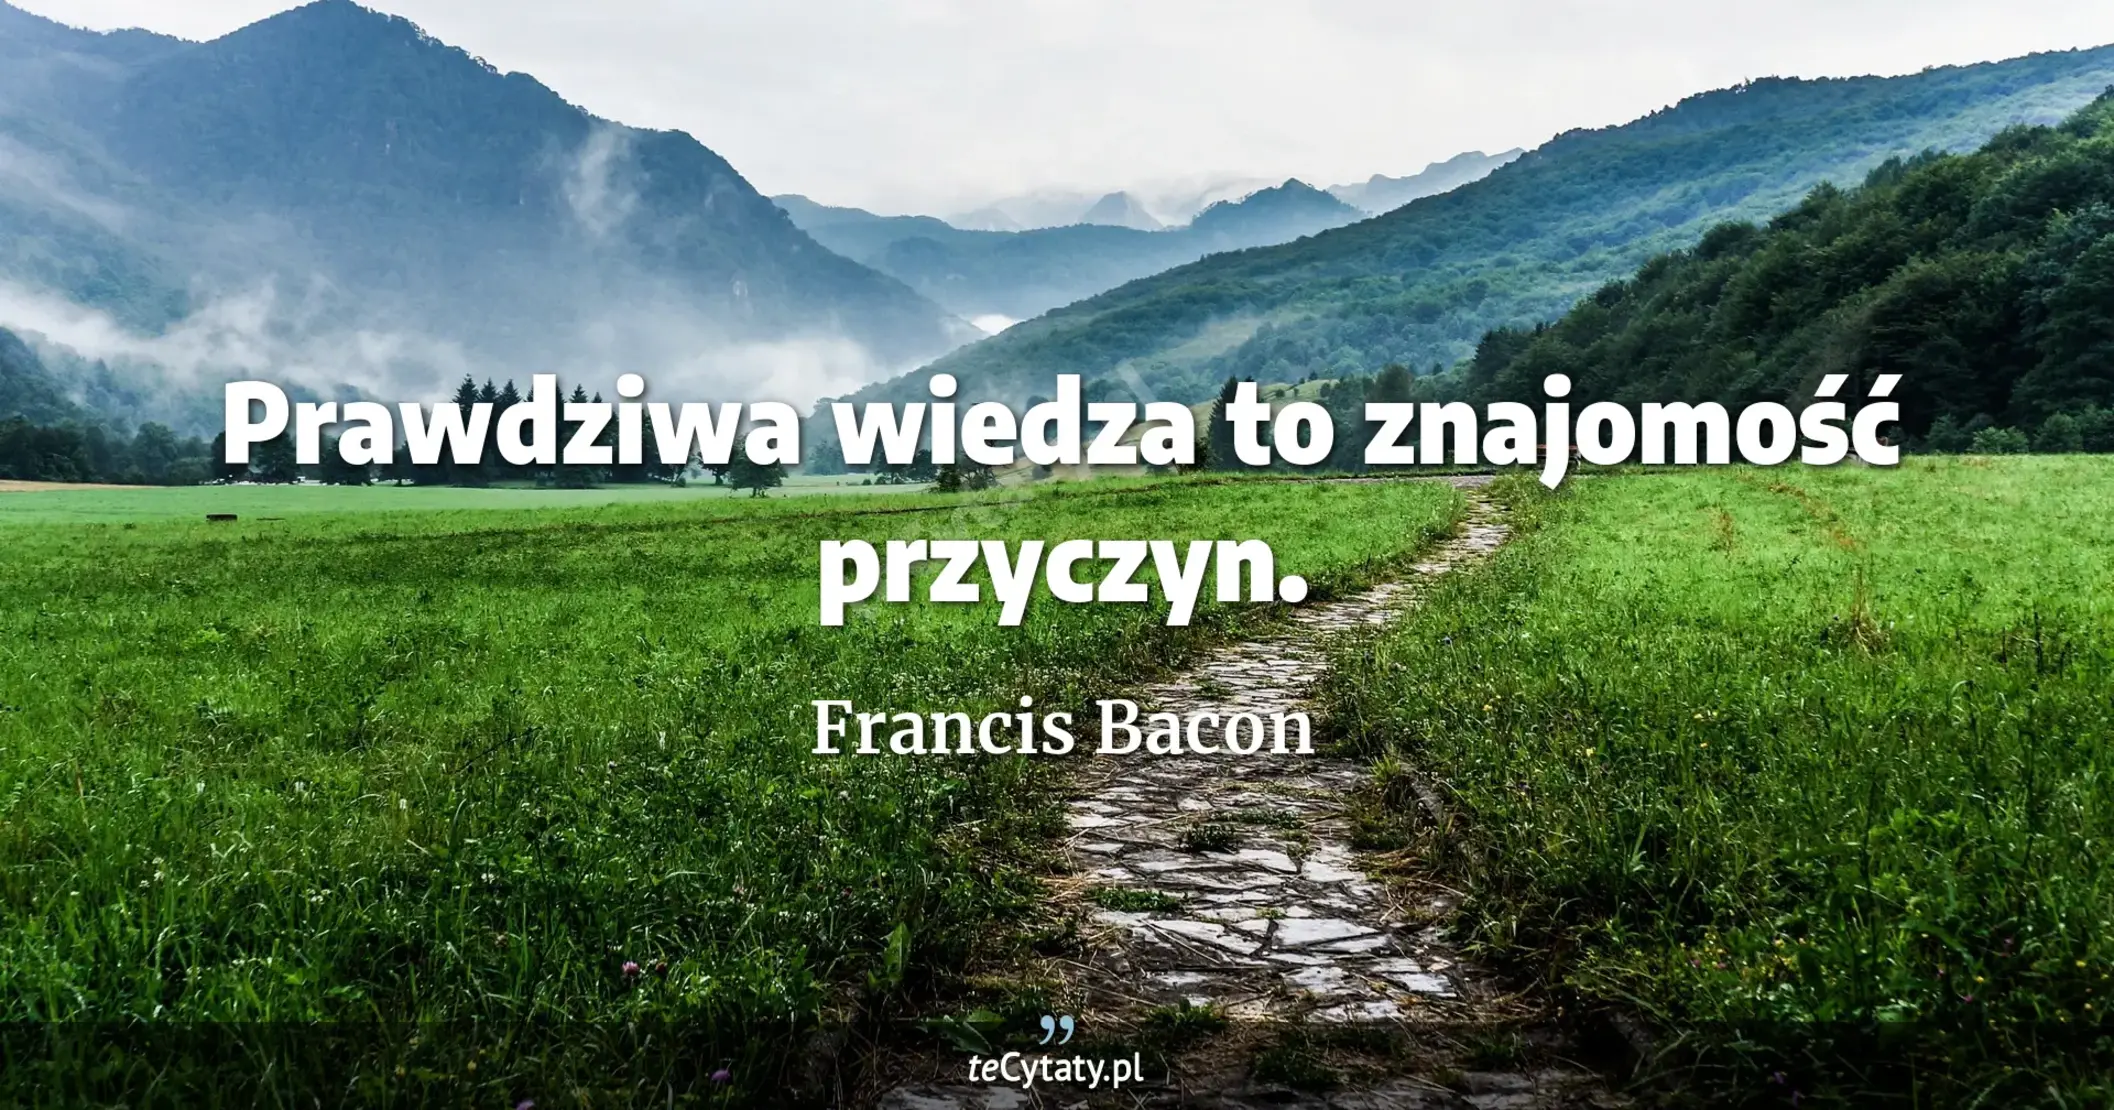 Prawdziwa wiedza to znajomość przyczyn. - Francis Bacon